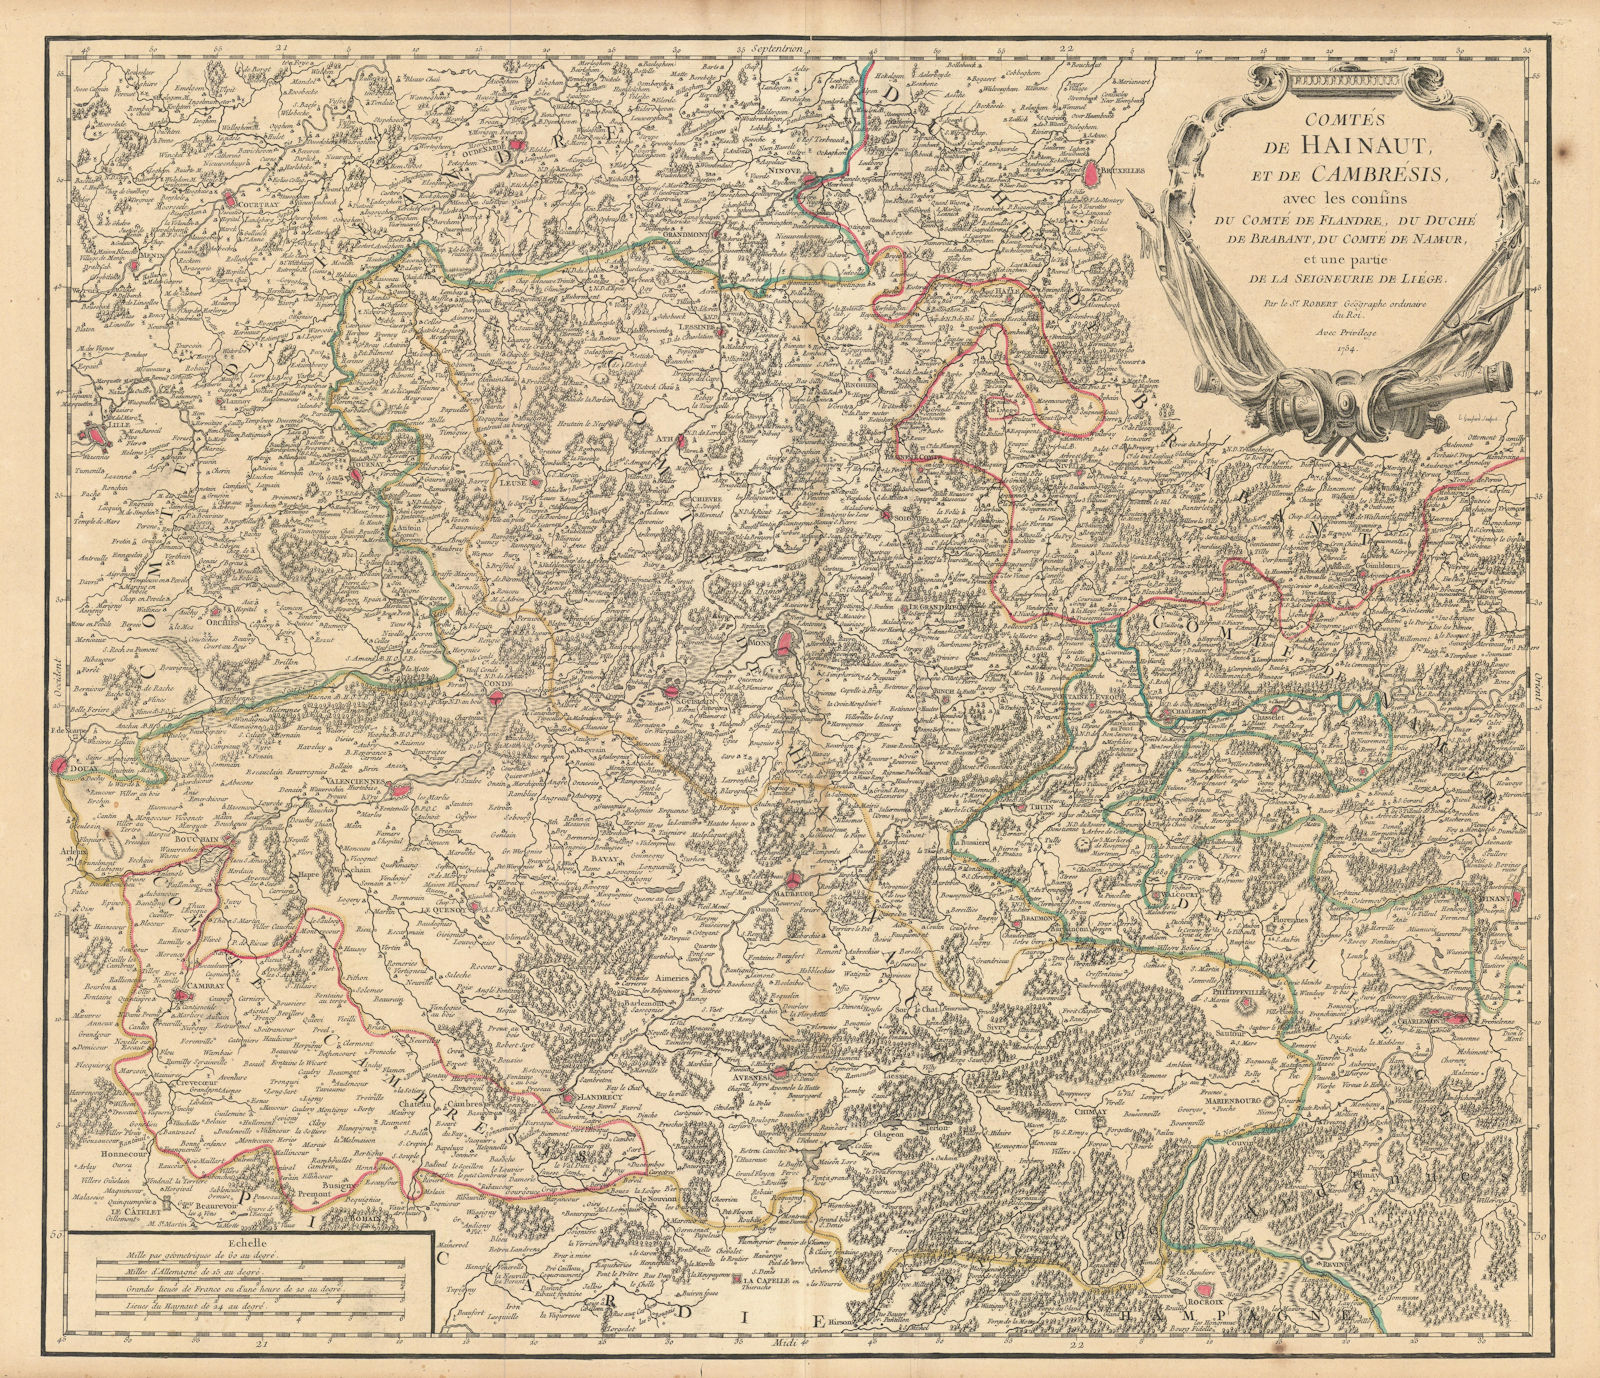 Associate Product "Comtés de Hainaut, et de Cambrésis". Cambrai. Belgium/France. VAUGONDY 1754 map